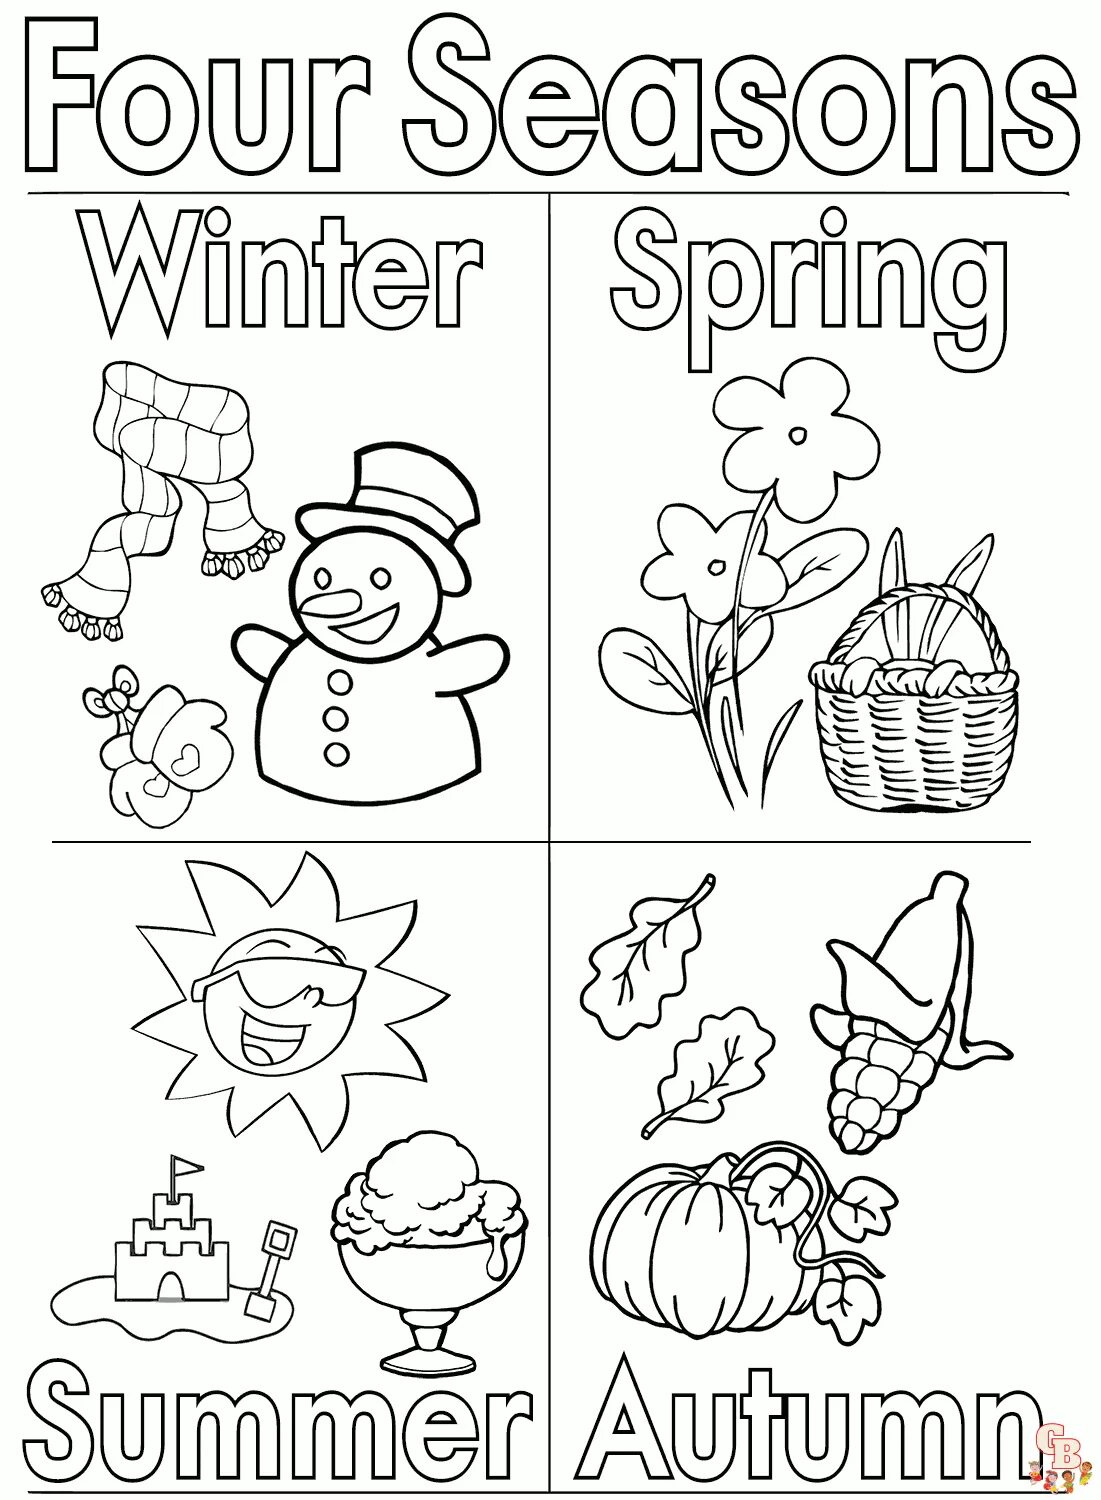 Seasons раскраска. Seasons задания для детей. Времена года на английском раскраска. Английский для малышей времена года. Seasons activities